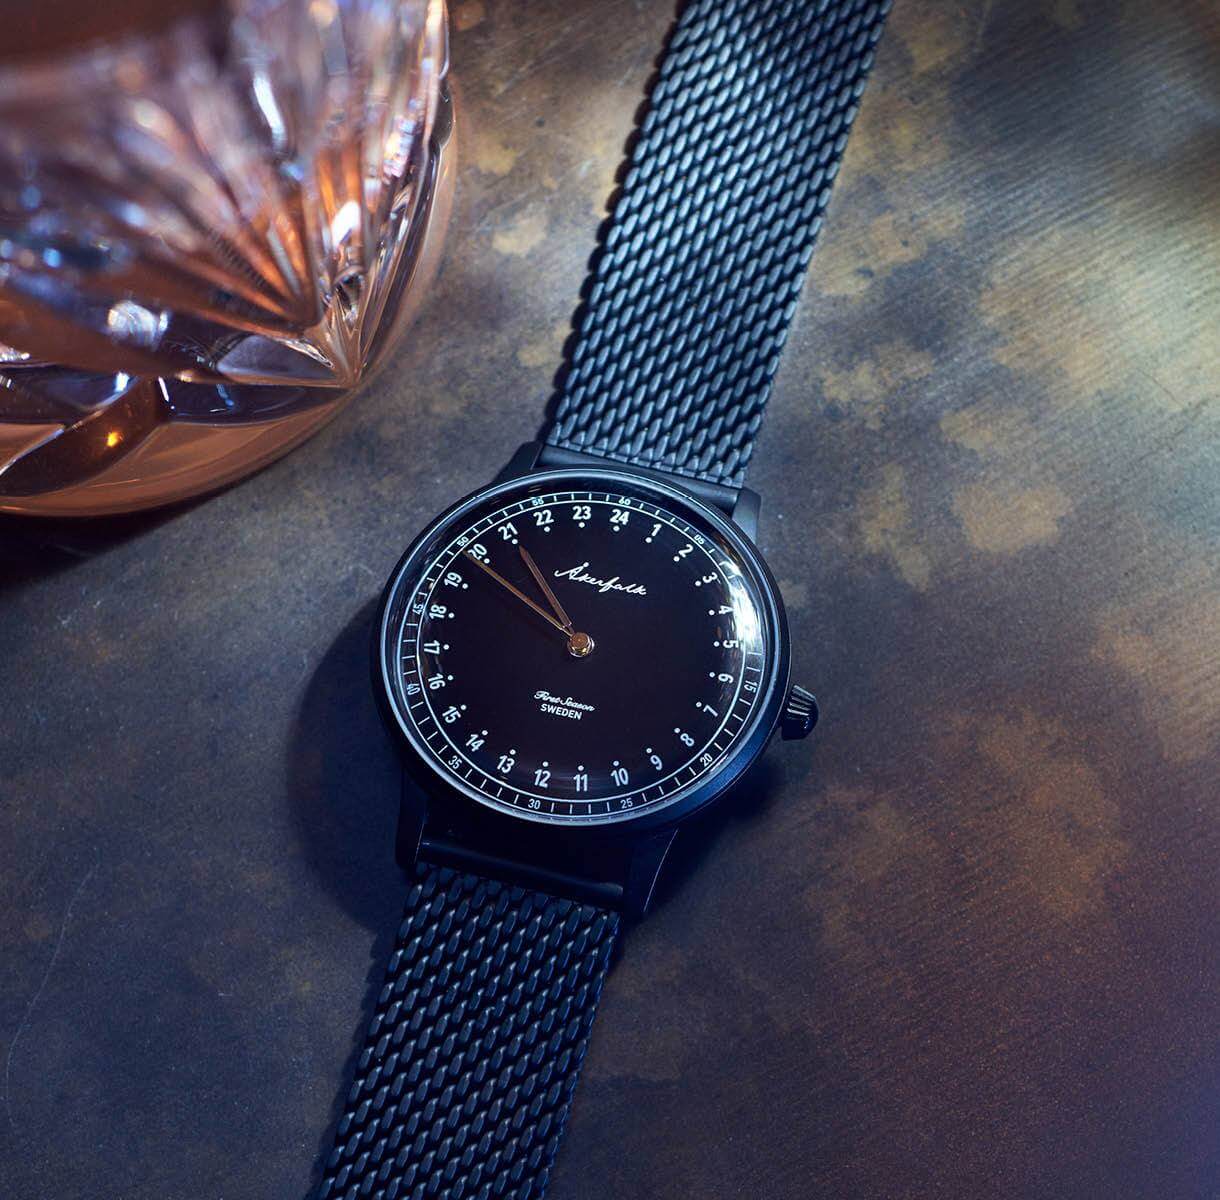 Matte black watches